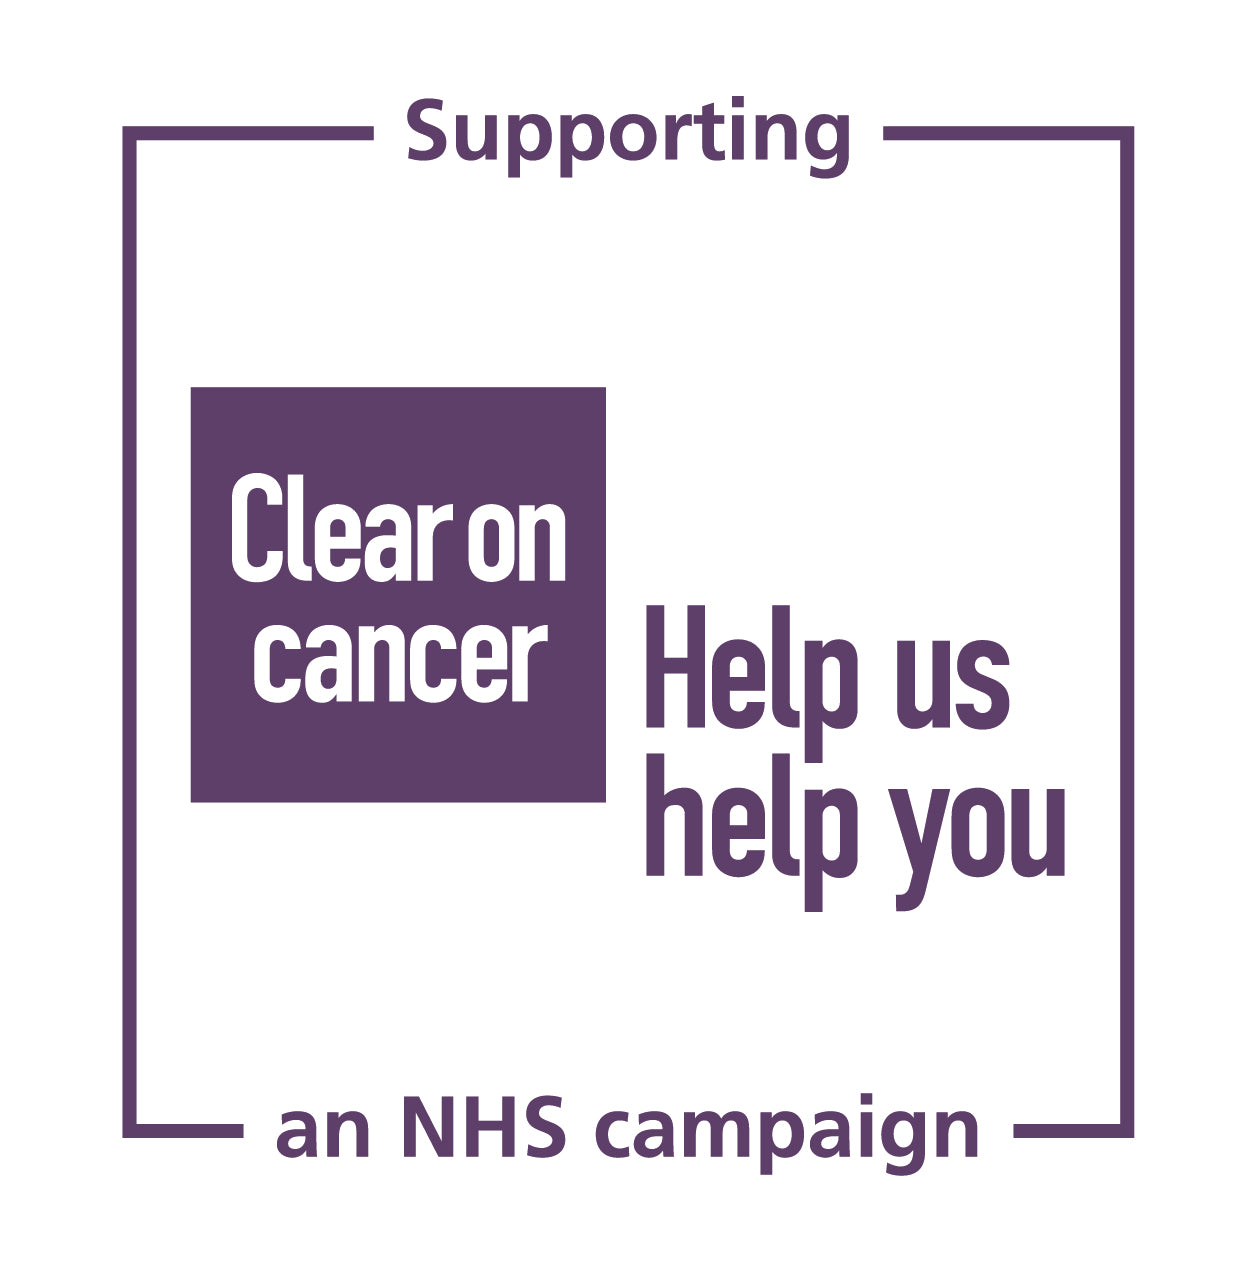 NHS Help us, Help you image